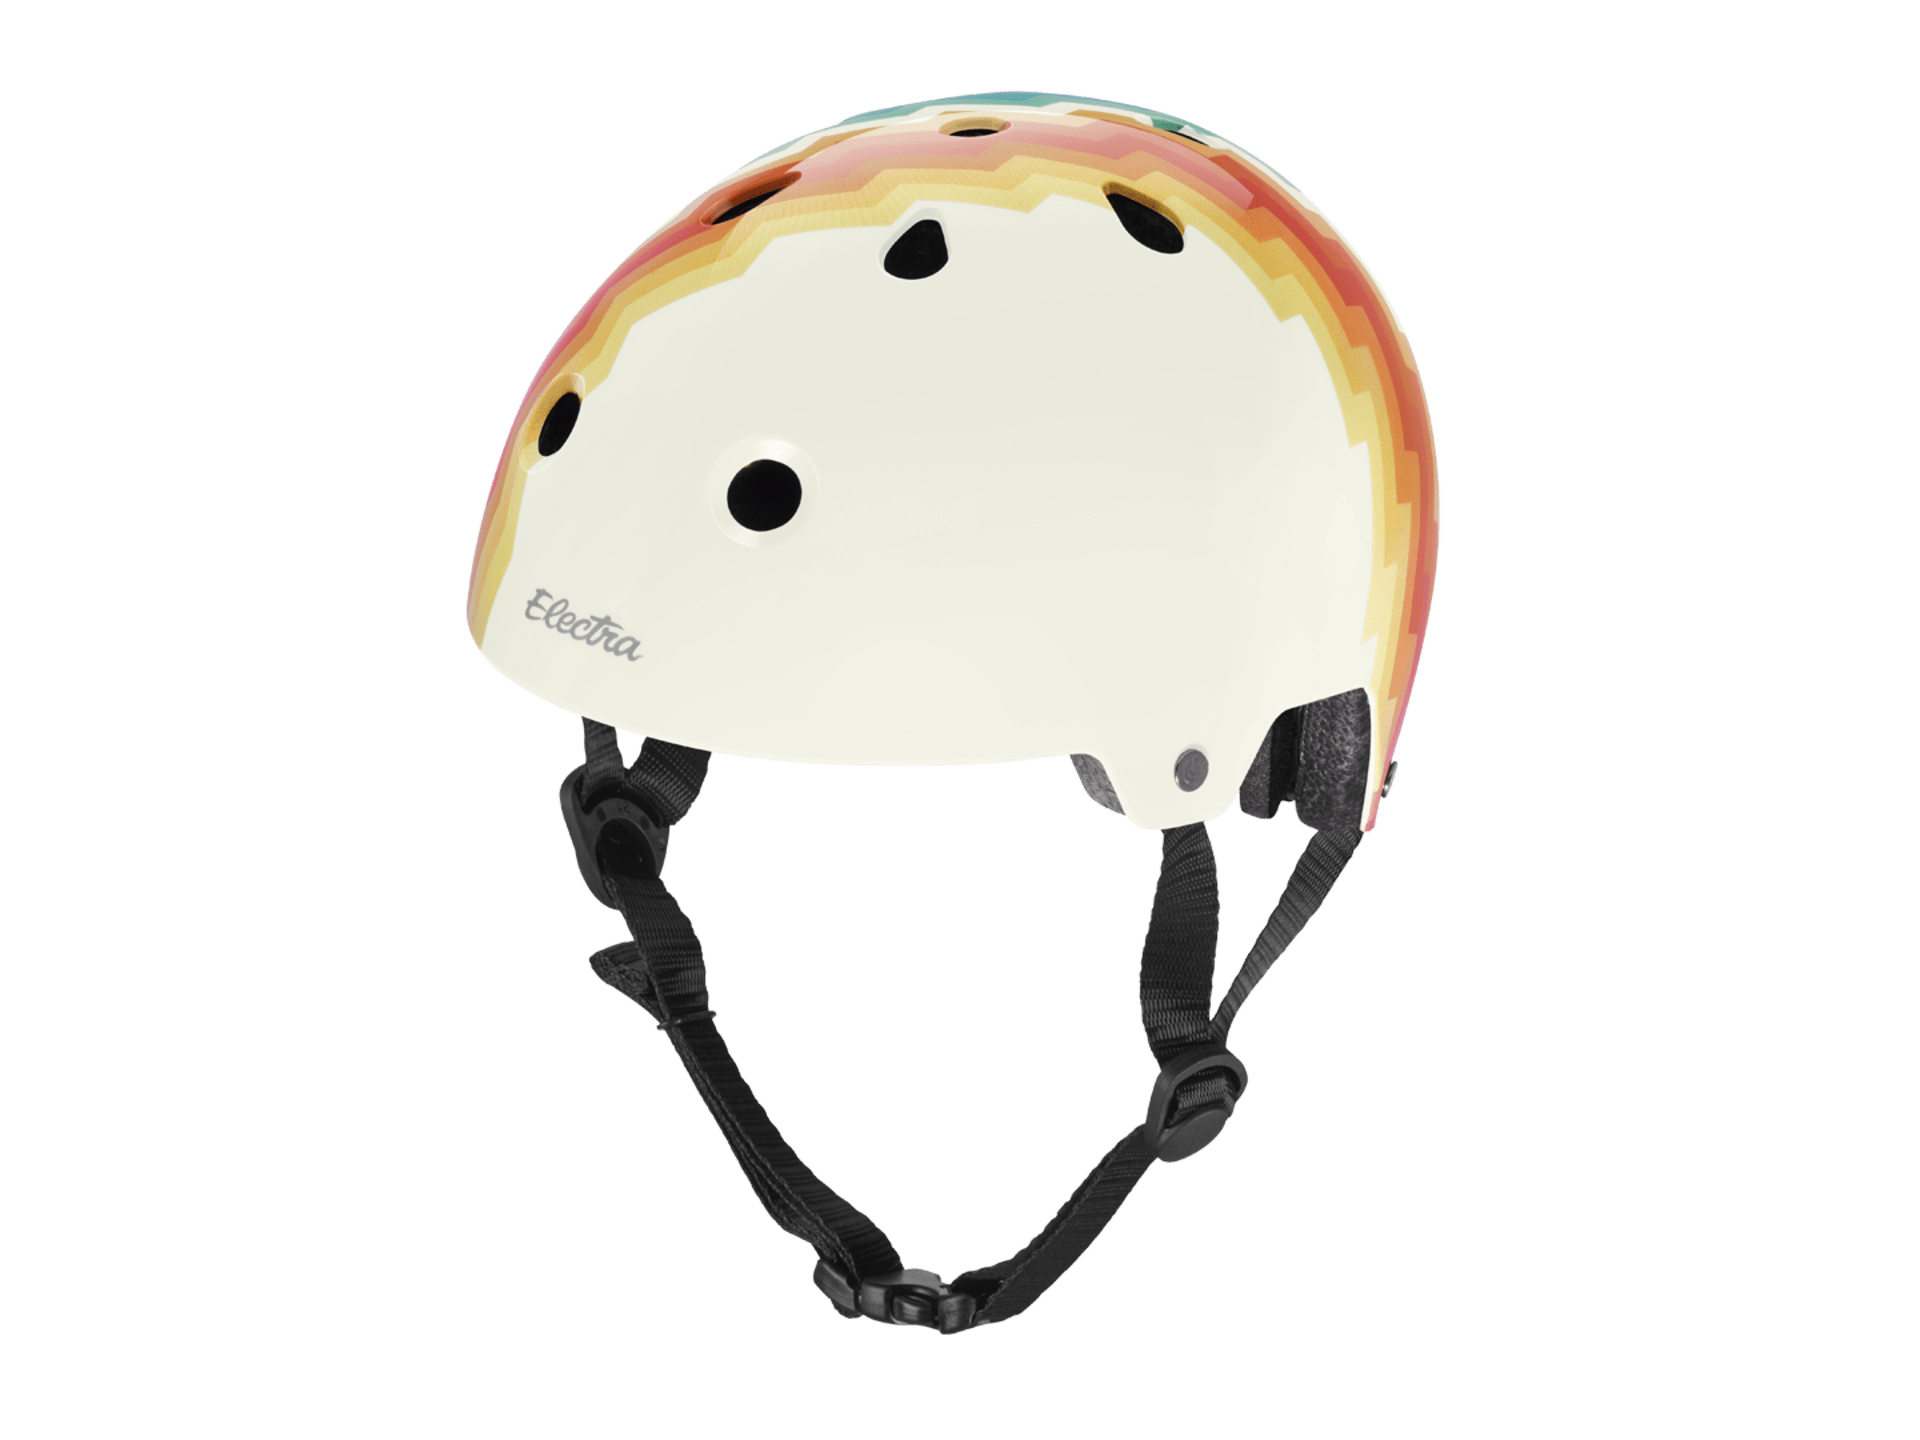 Electra Ziggy Lifestyle Helmet